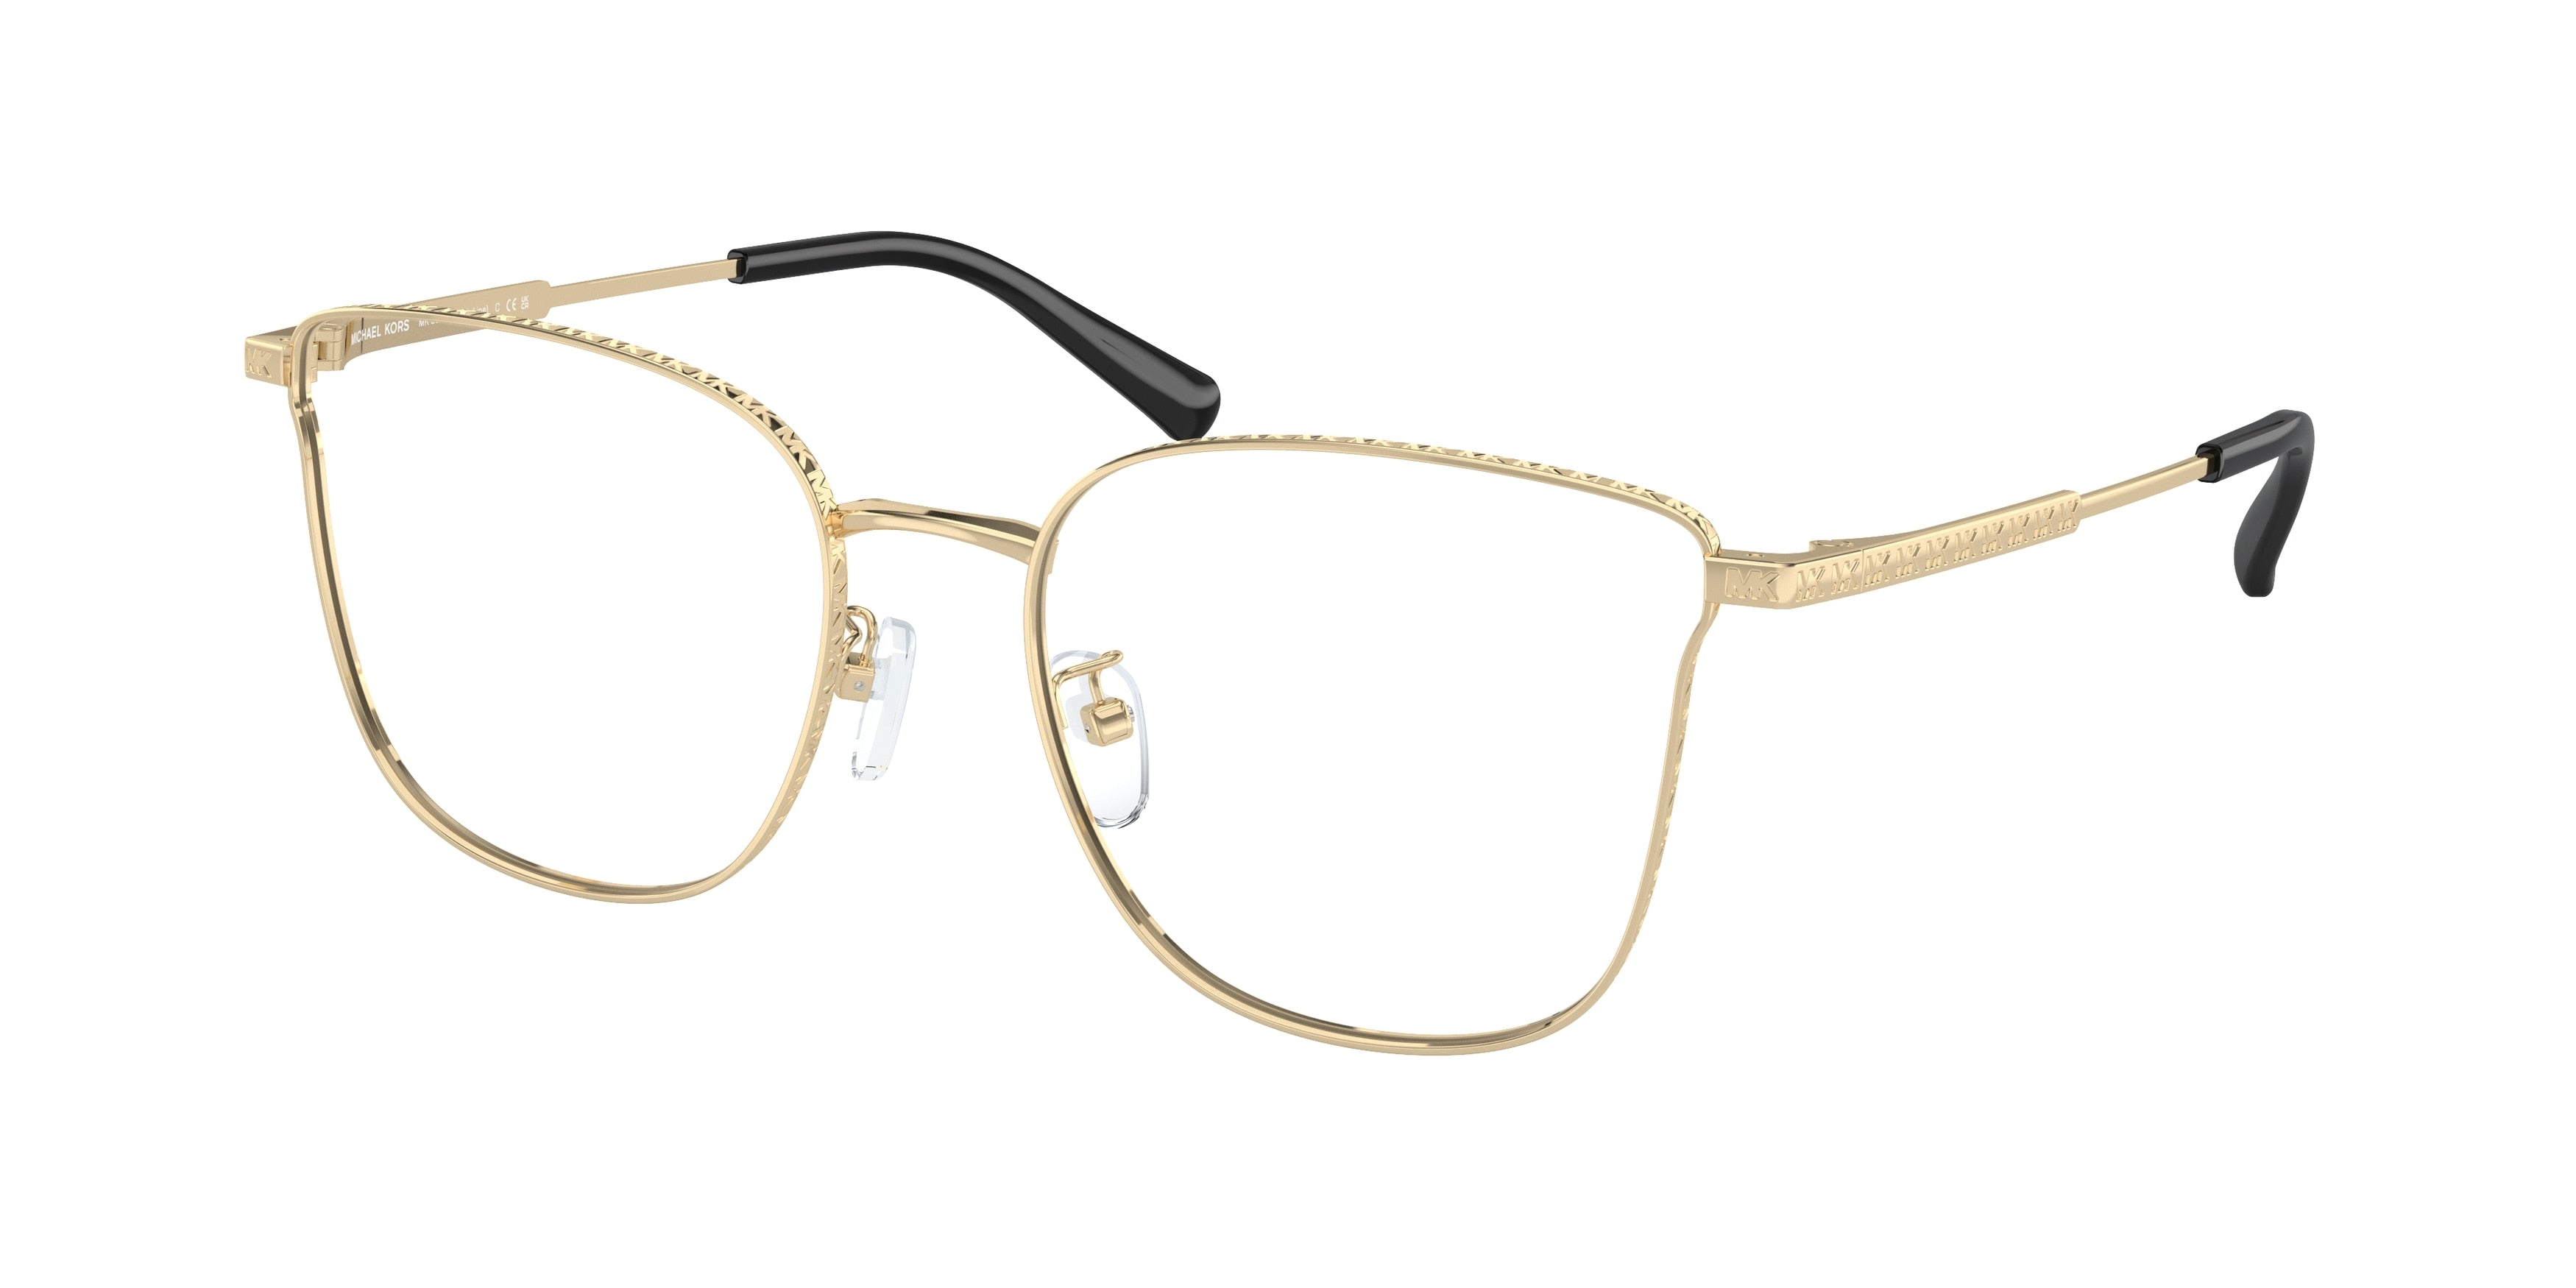 Michael Kors KOH LIPE MK3073D Cat Eye Eyeglasses  1016-Light Gold 55-145-18 - Color Map Gold